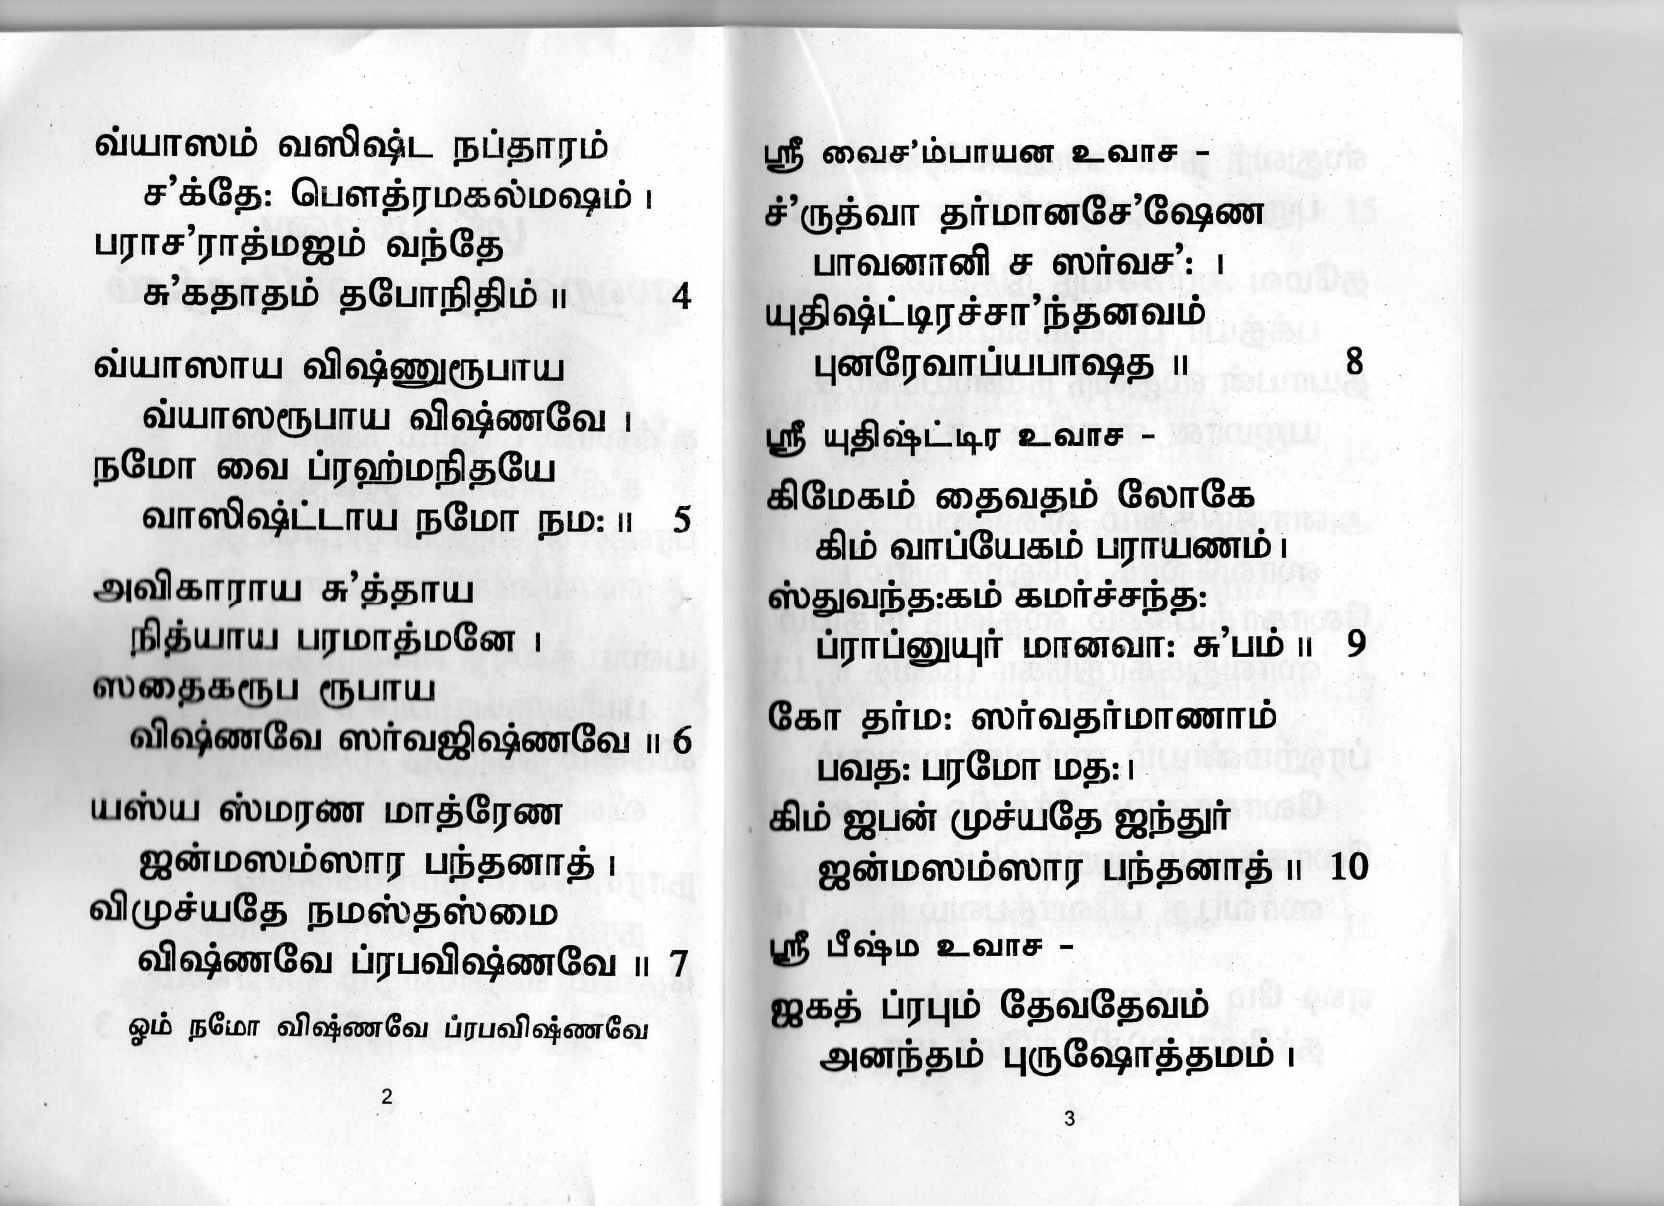 vishnu sahasranamam meaning in tamil